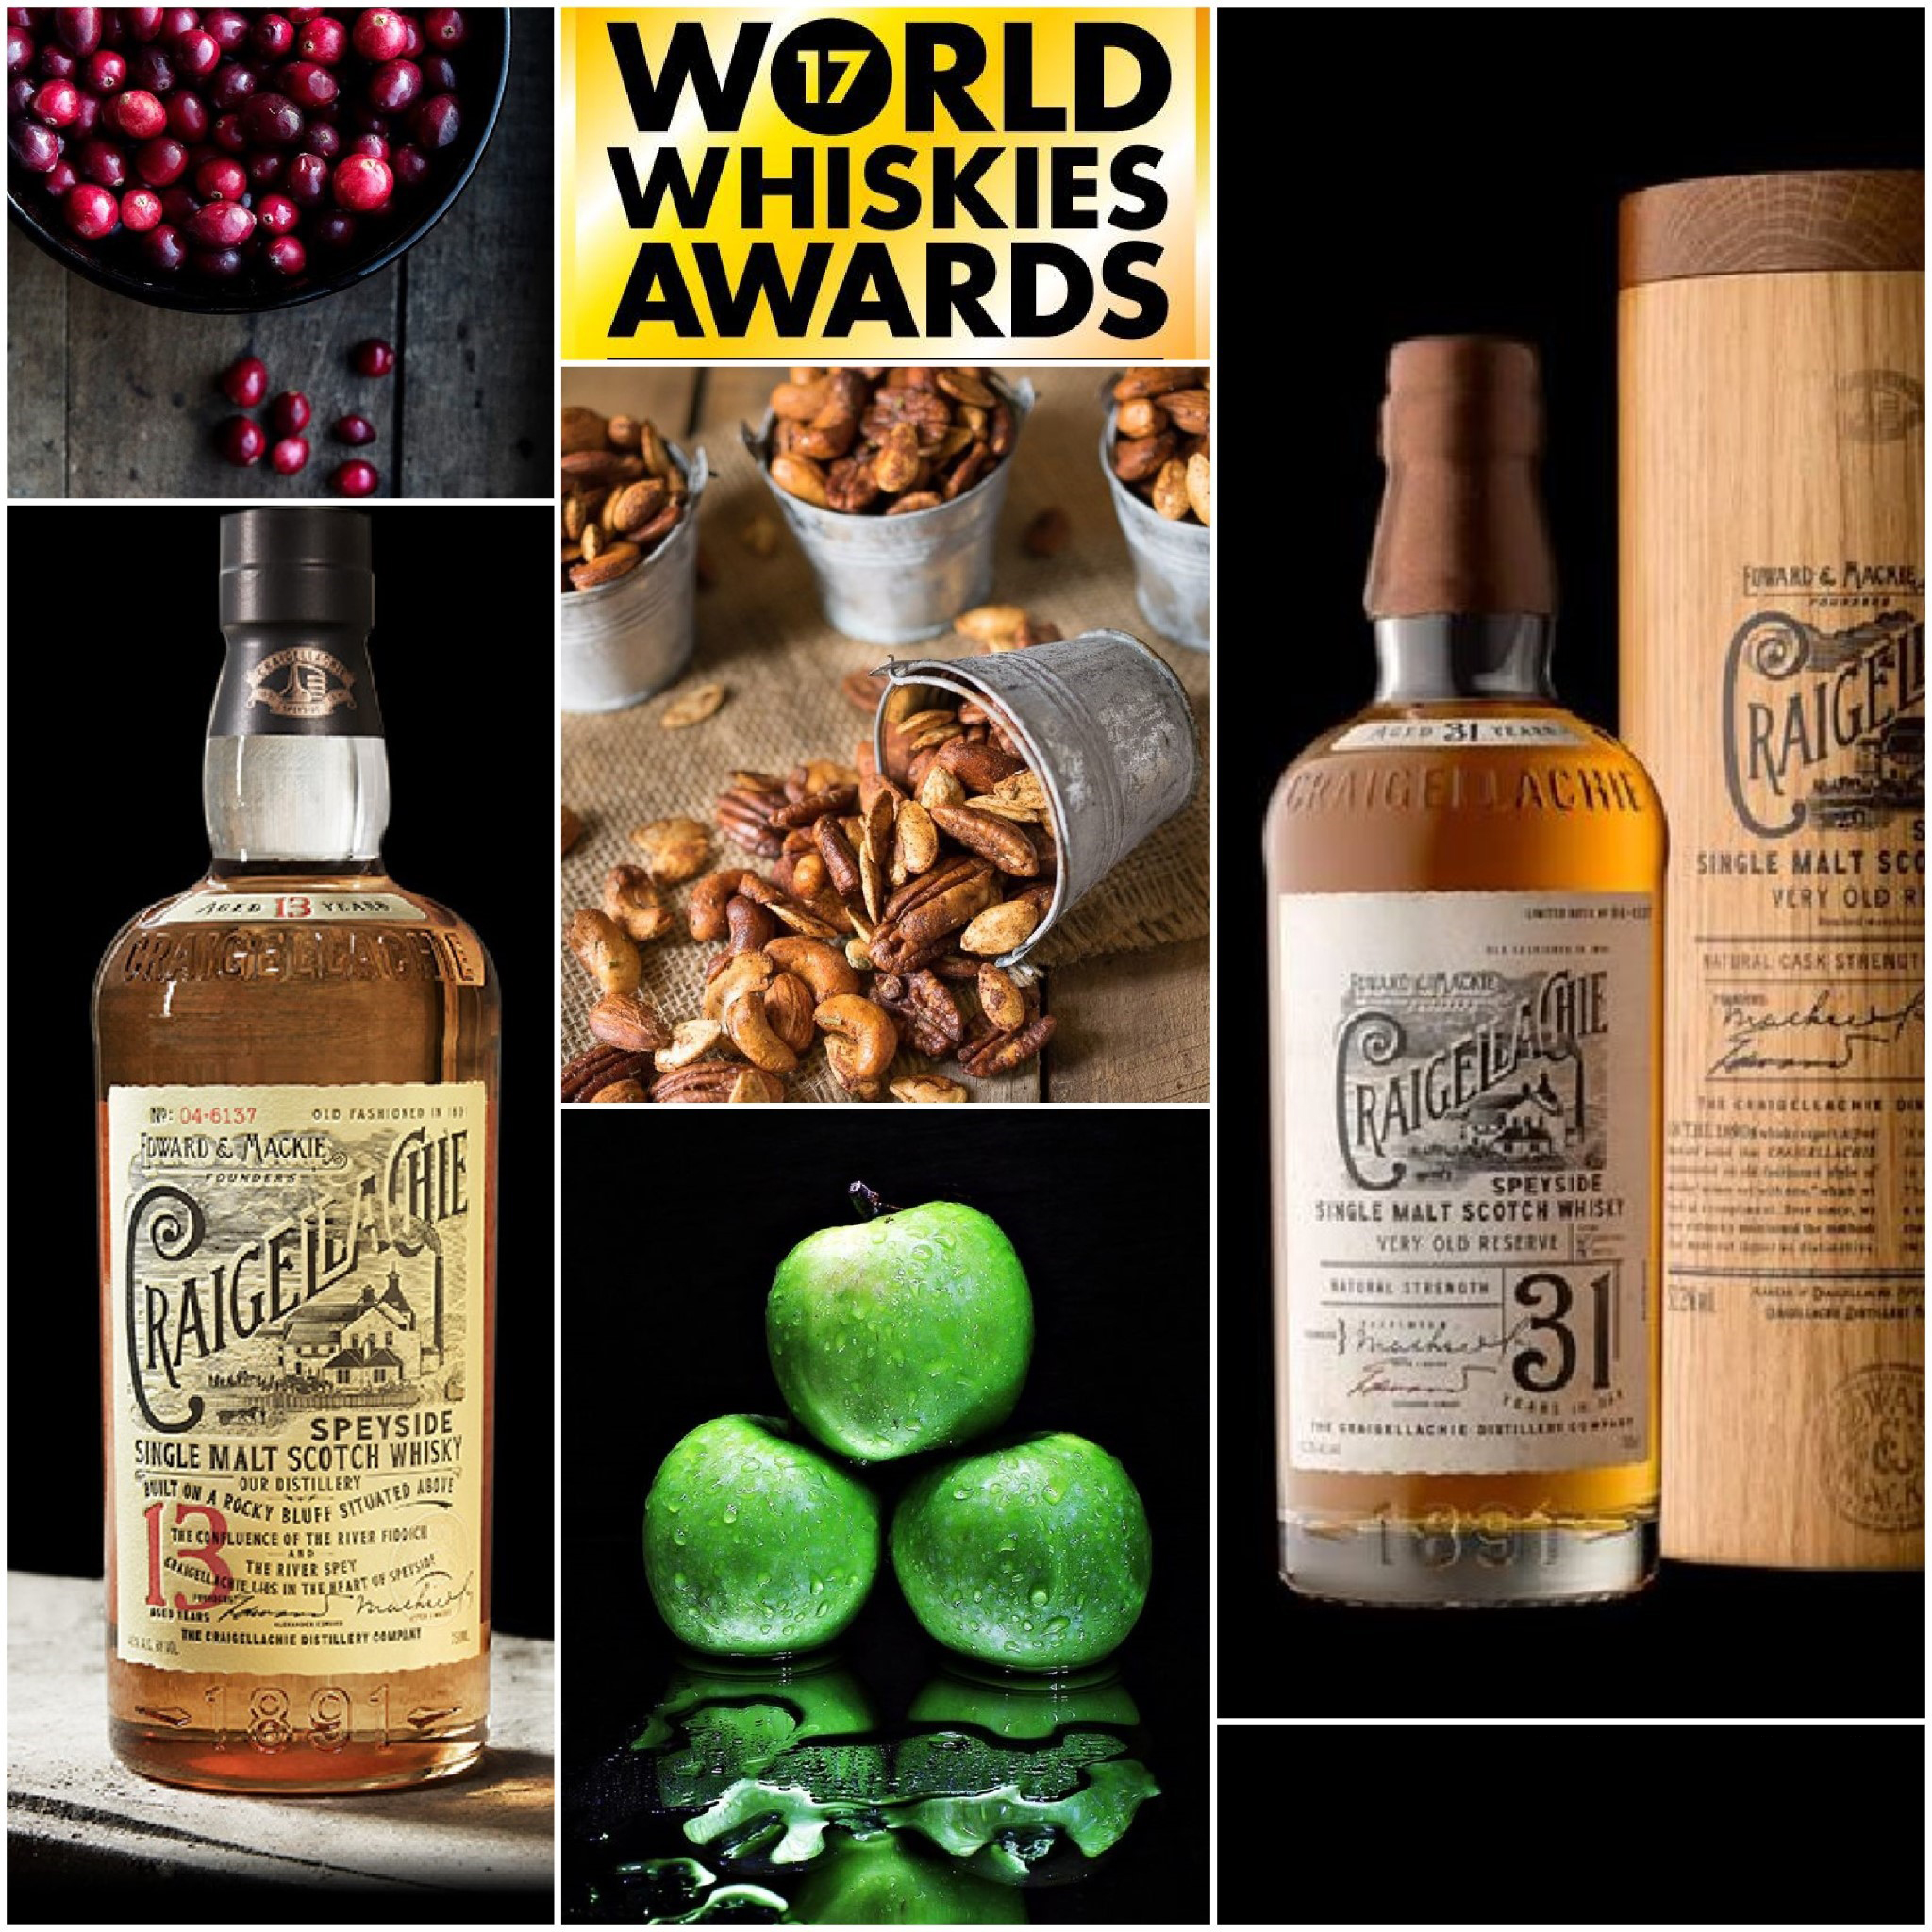 Nagrody World Whiskies Awards przyznane, jednak szanse na degustację zwycięzców niewielkie...